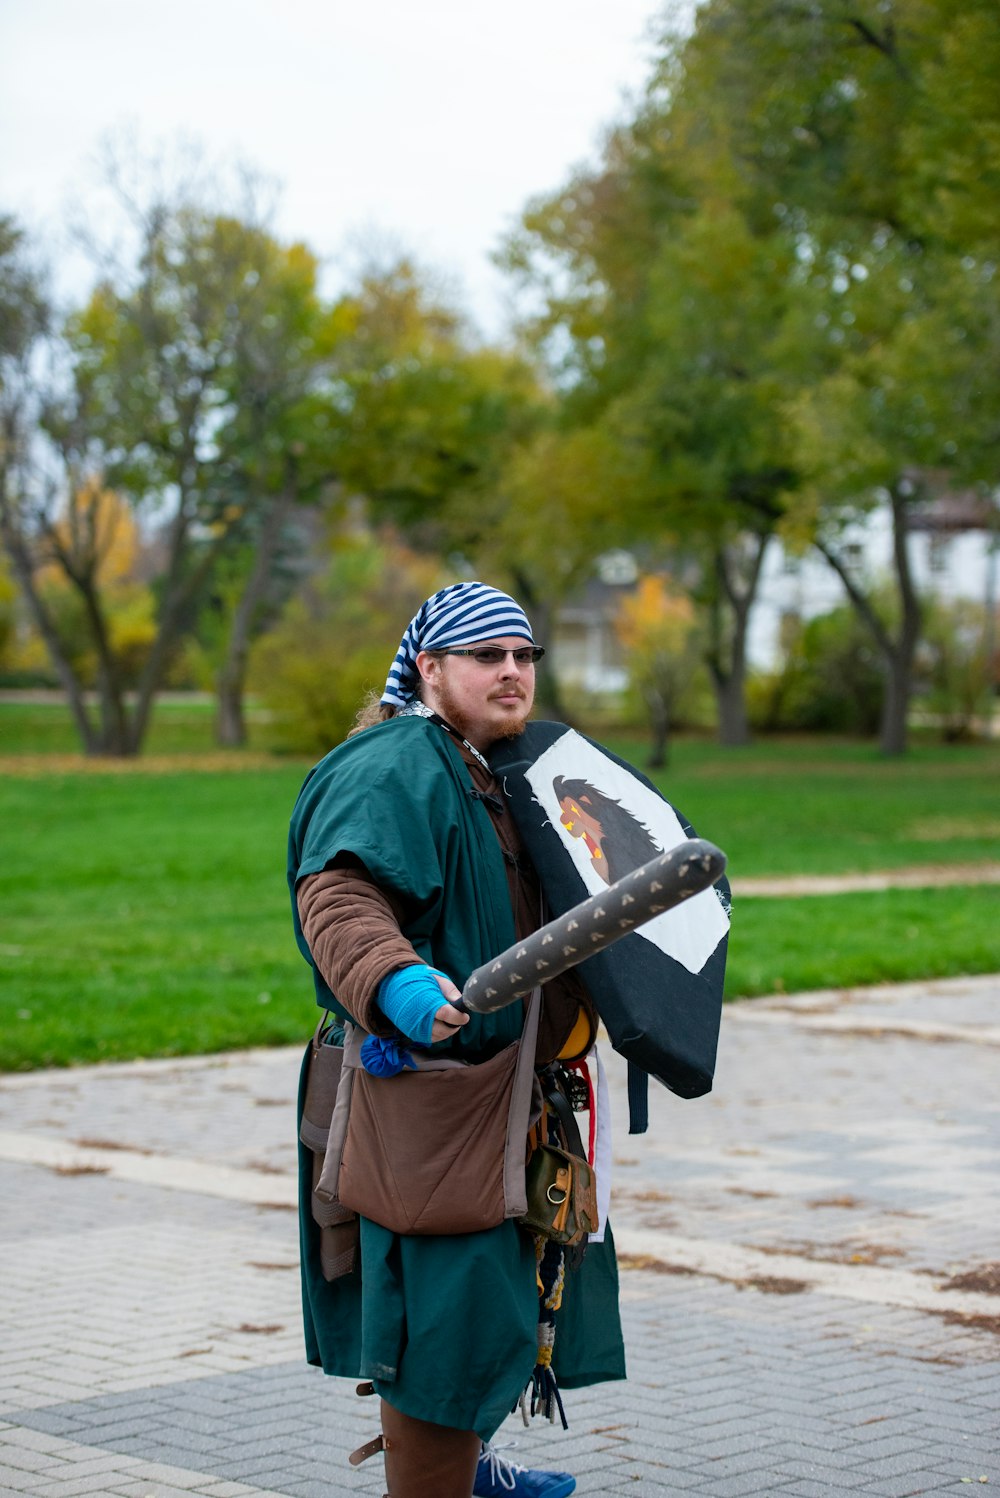 a man in a pirate costume holding a stick